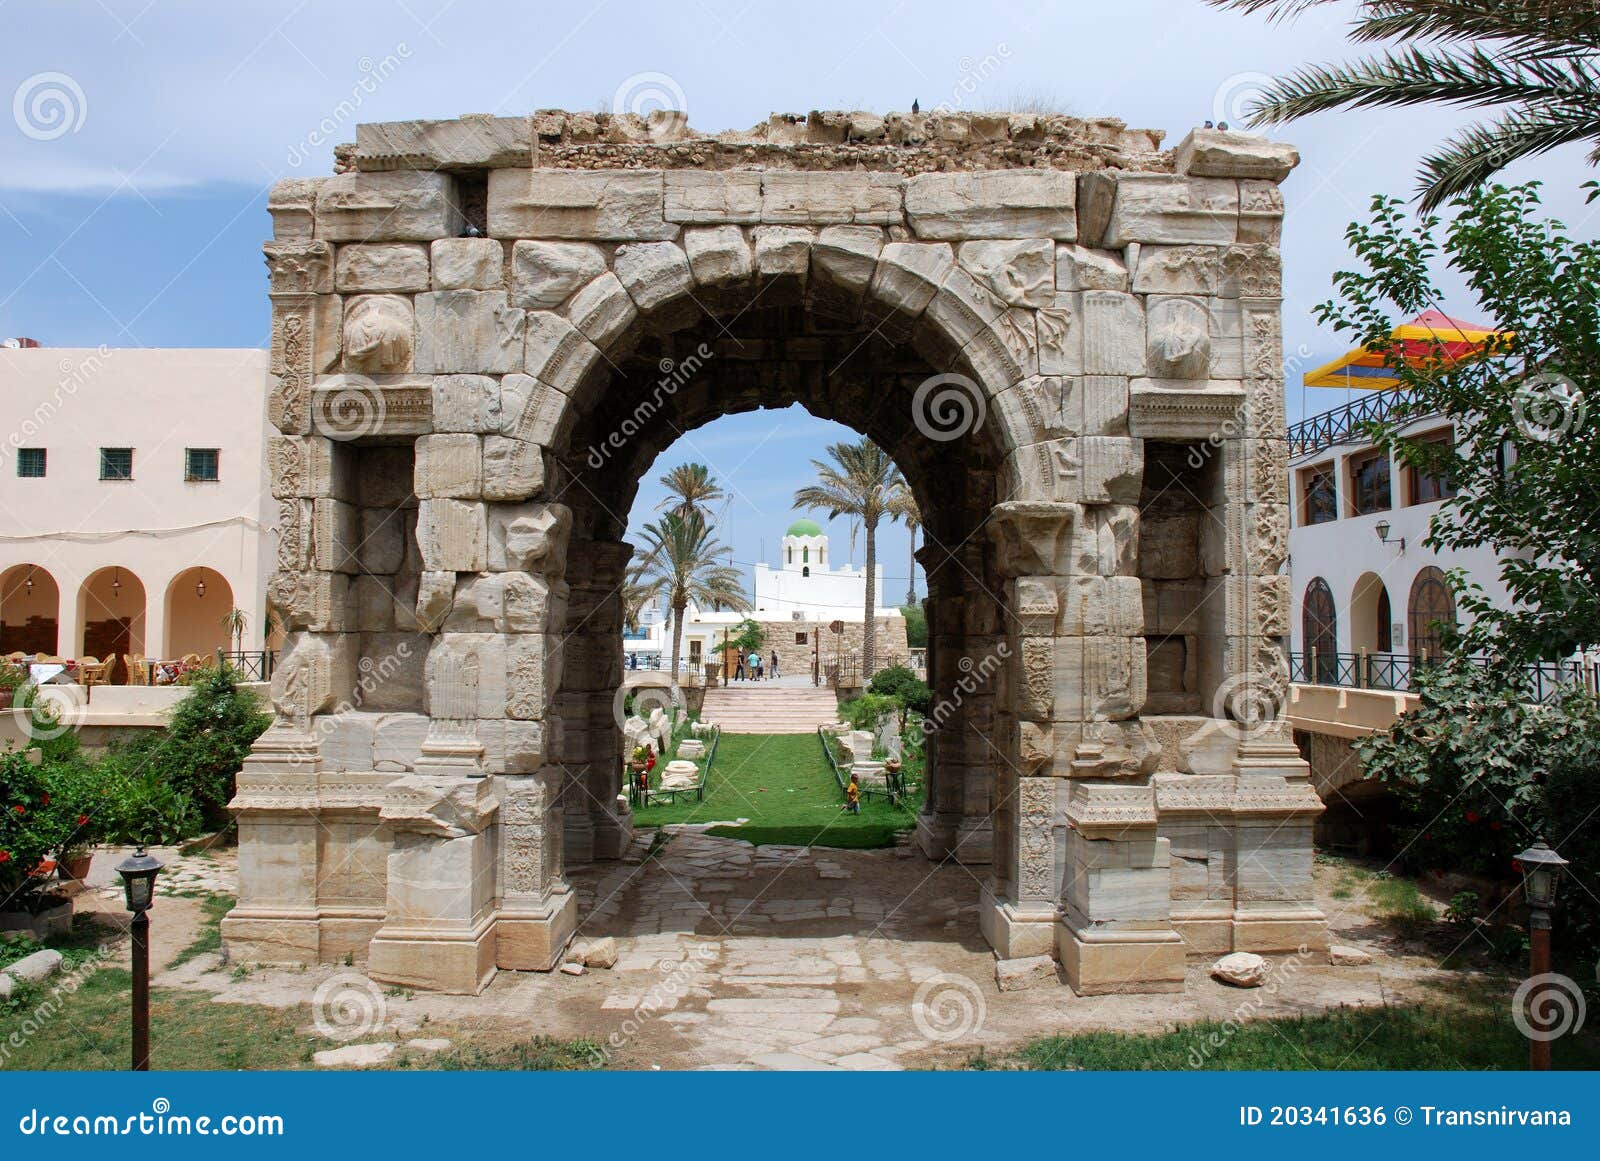 triumphal arch of marcus aurelius in tripoli